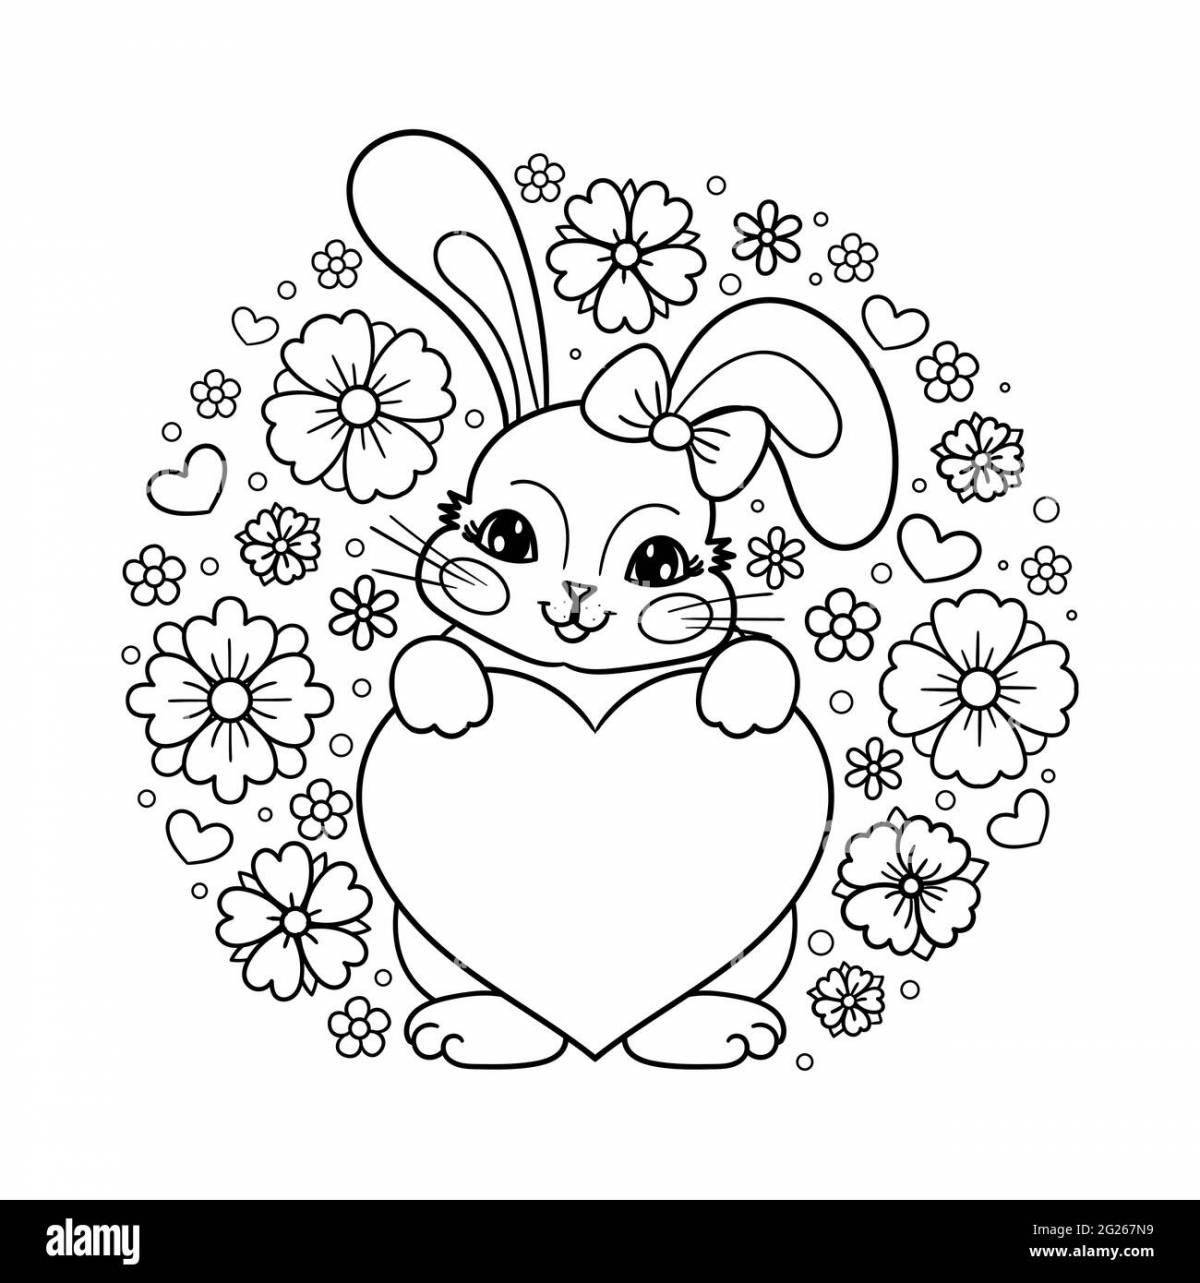 Яркий кролик с сердечком раскраска